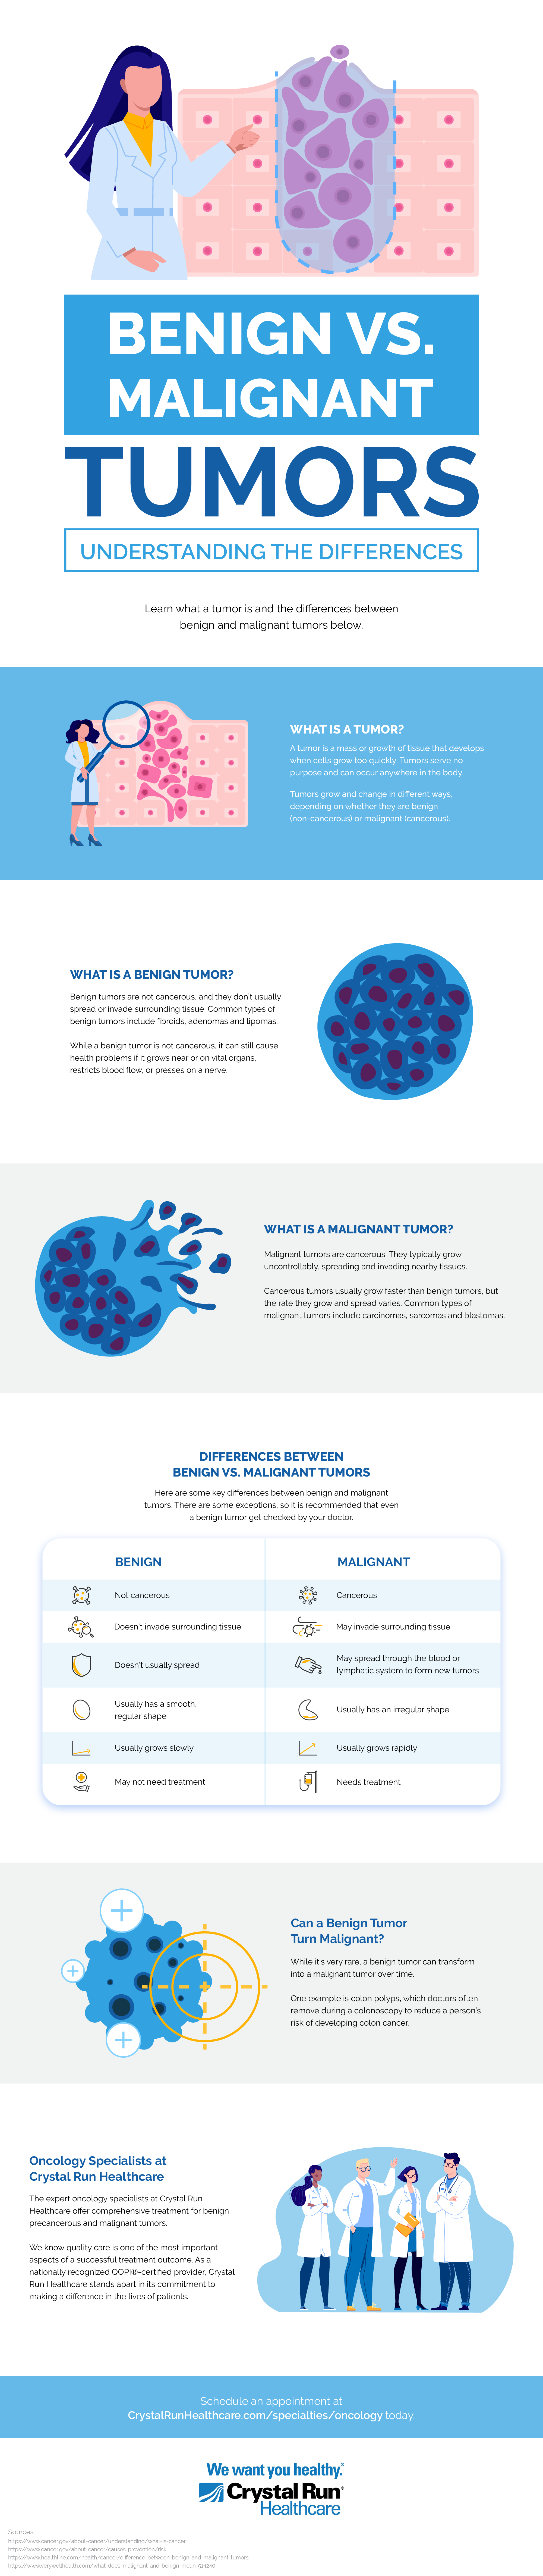 Benign vs Malignant Tumors Infographic